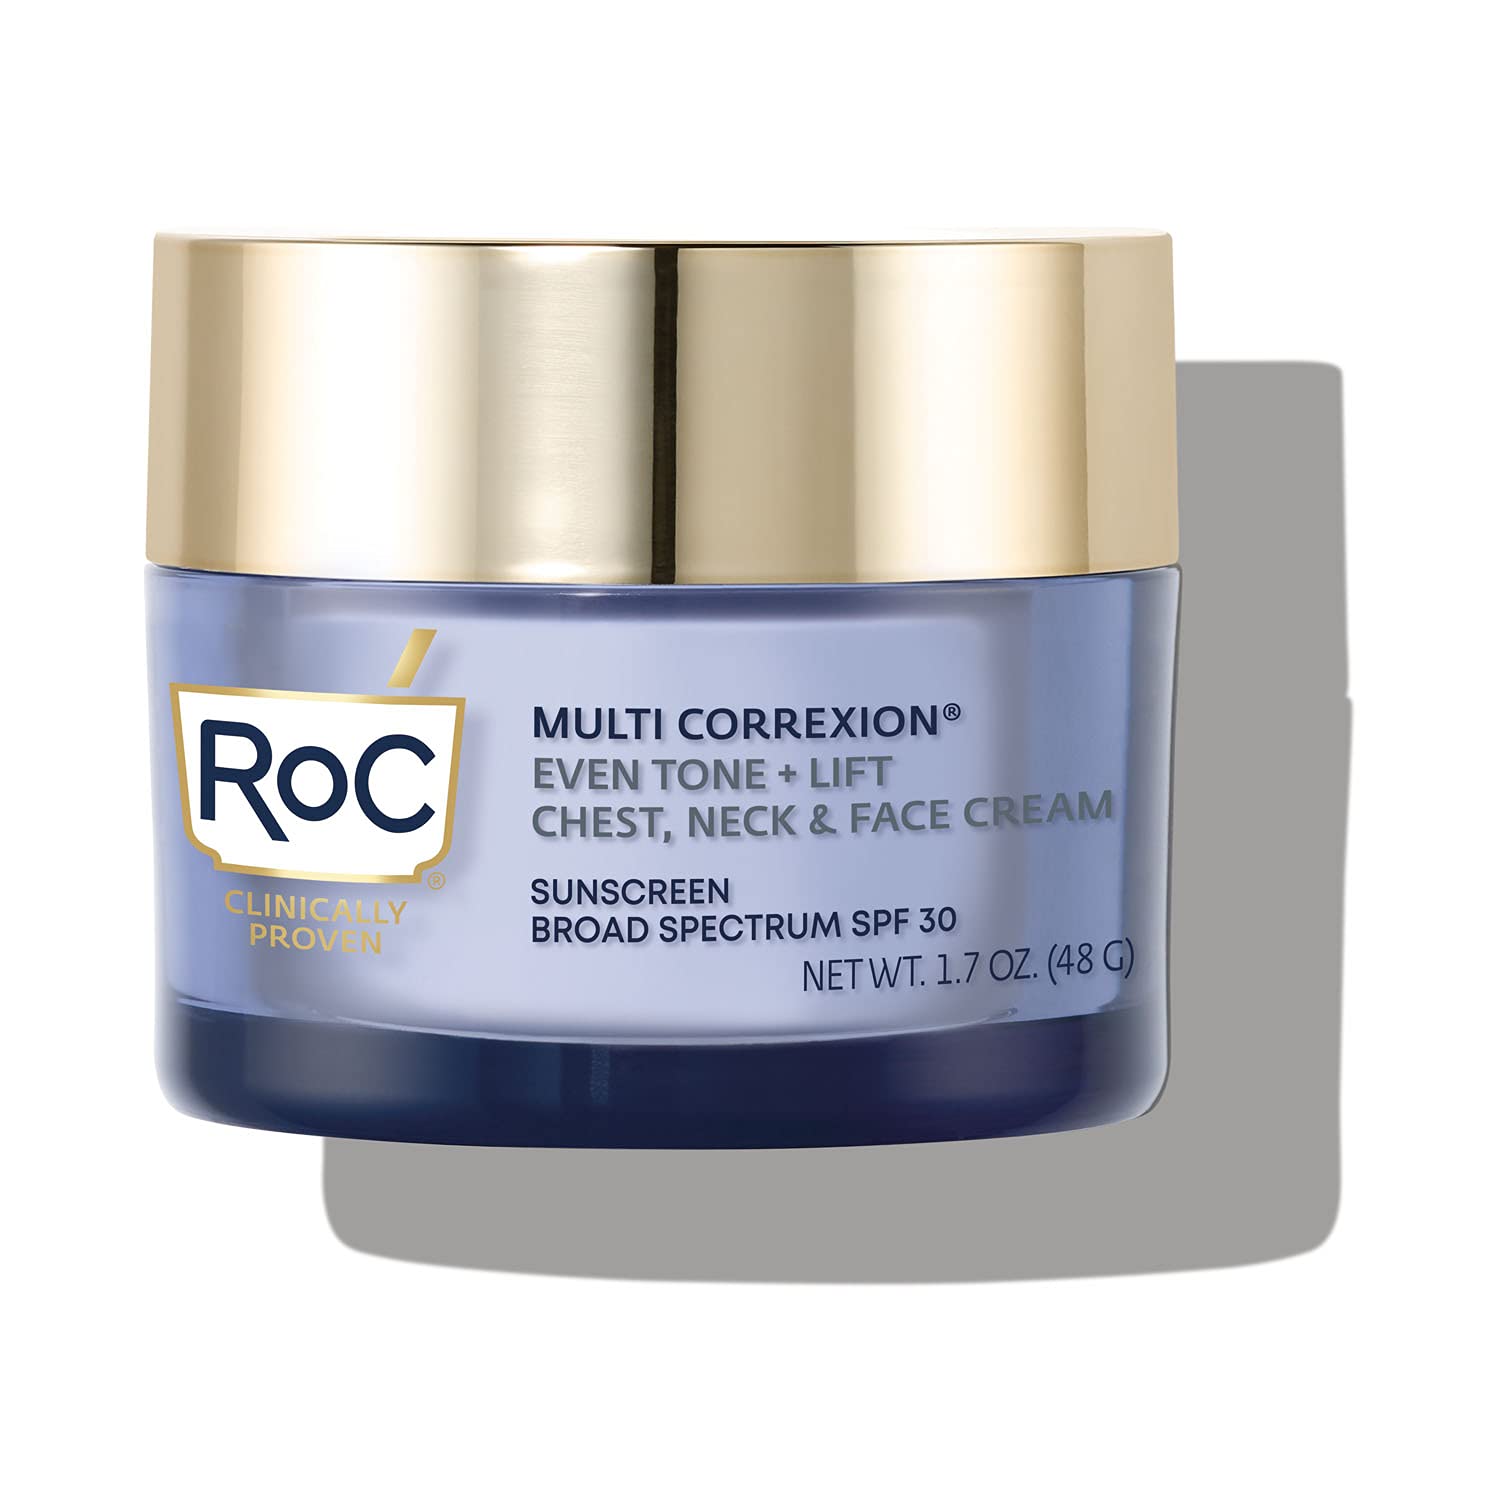 RoC Multi Correxion 5 in 1 Chest, Neck & Face Cream, $23